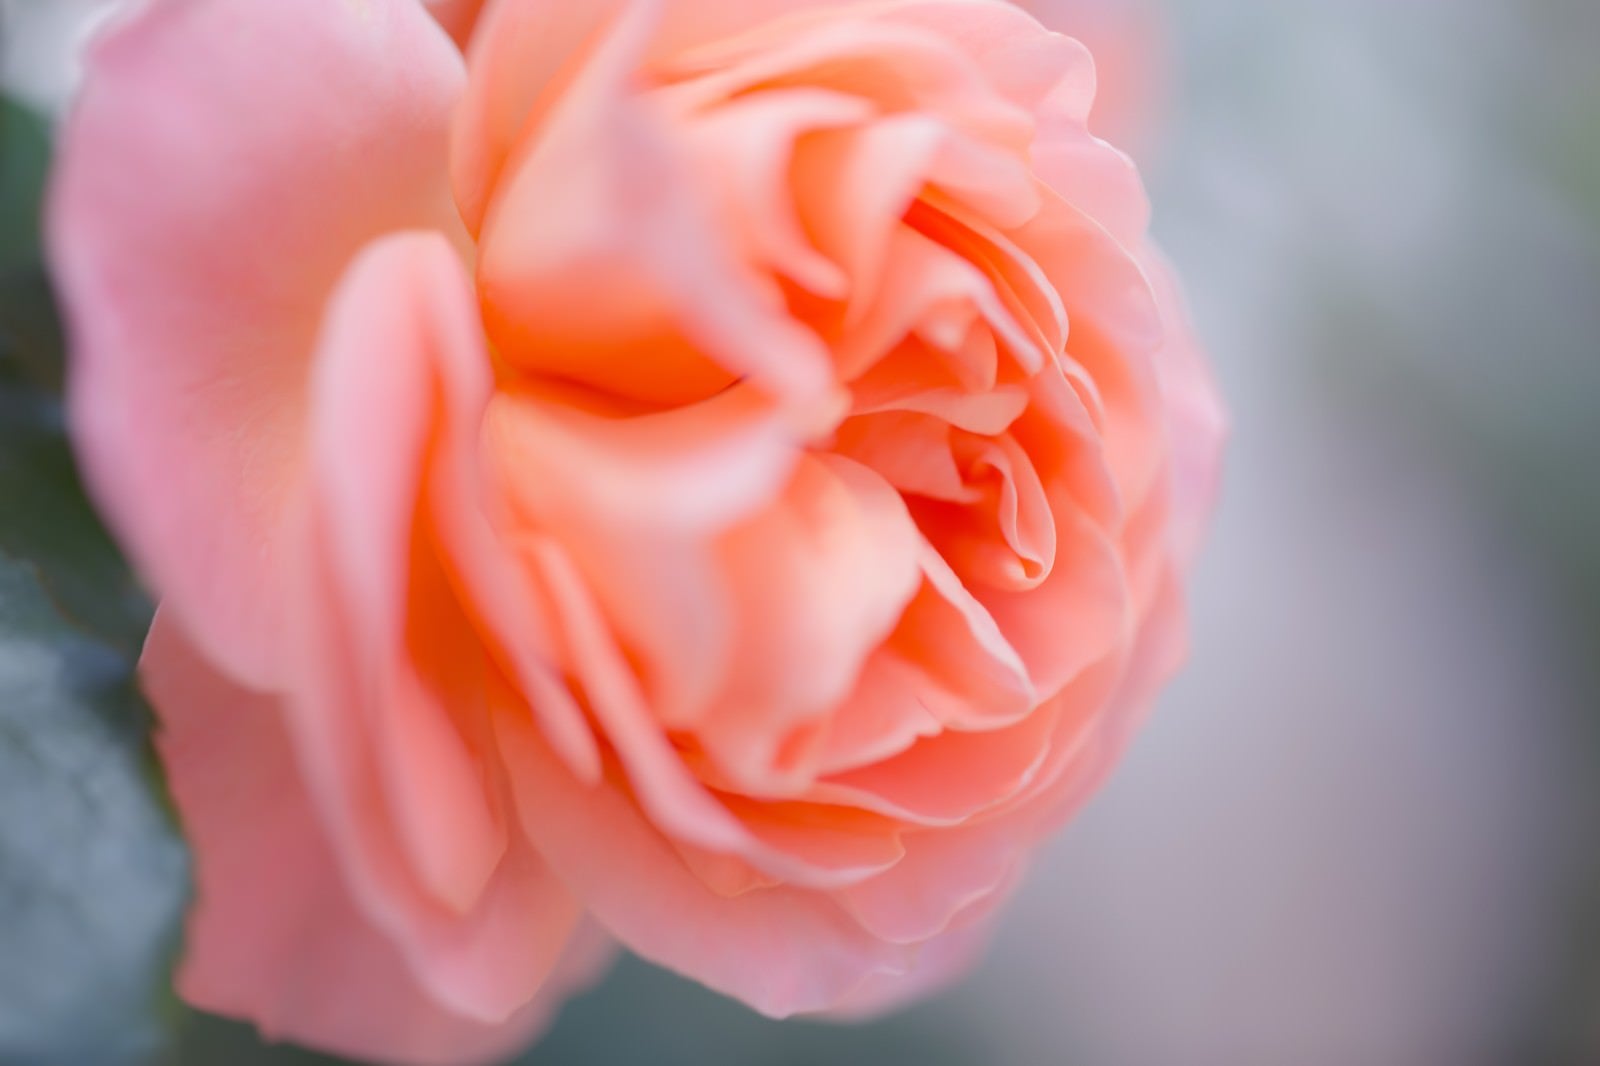 「薄いピンクの薔薇」の写真